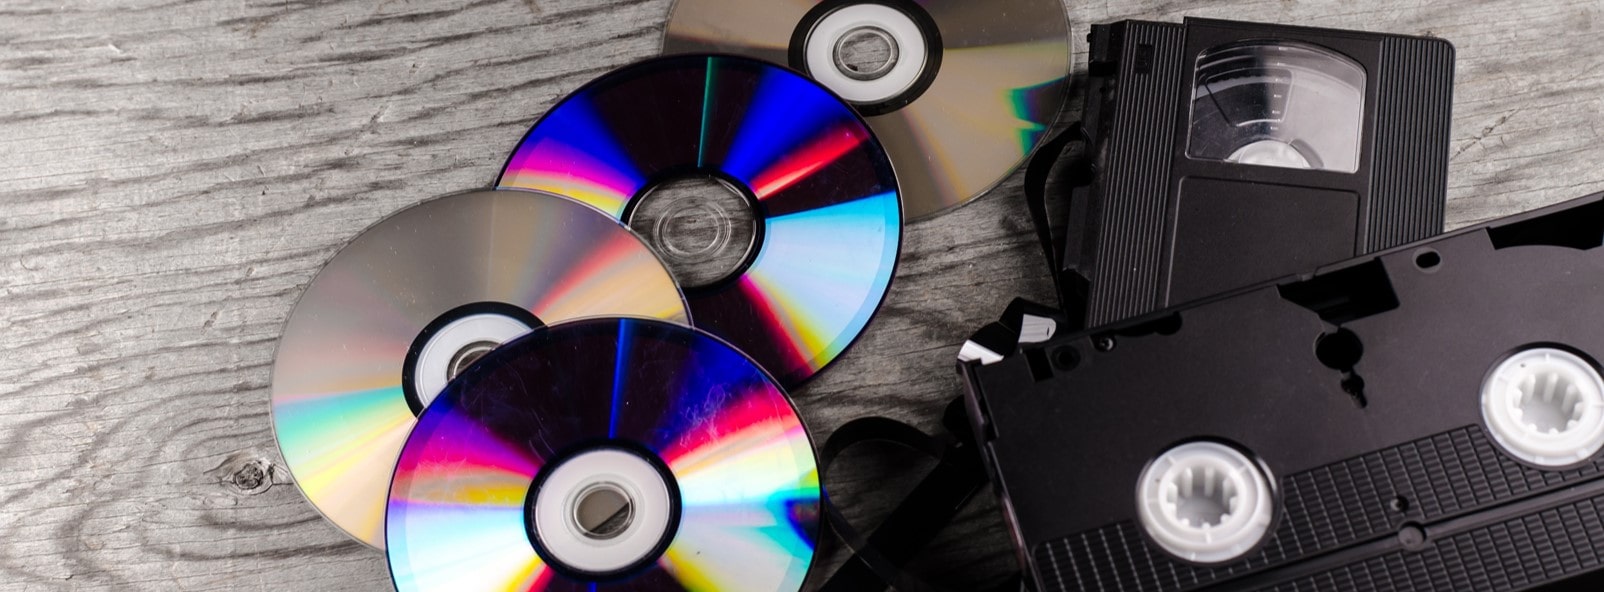 Numériser cassettes VHS sur DVD (et clé USB) : transfert qualitatif